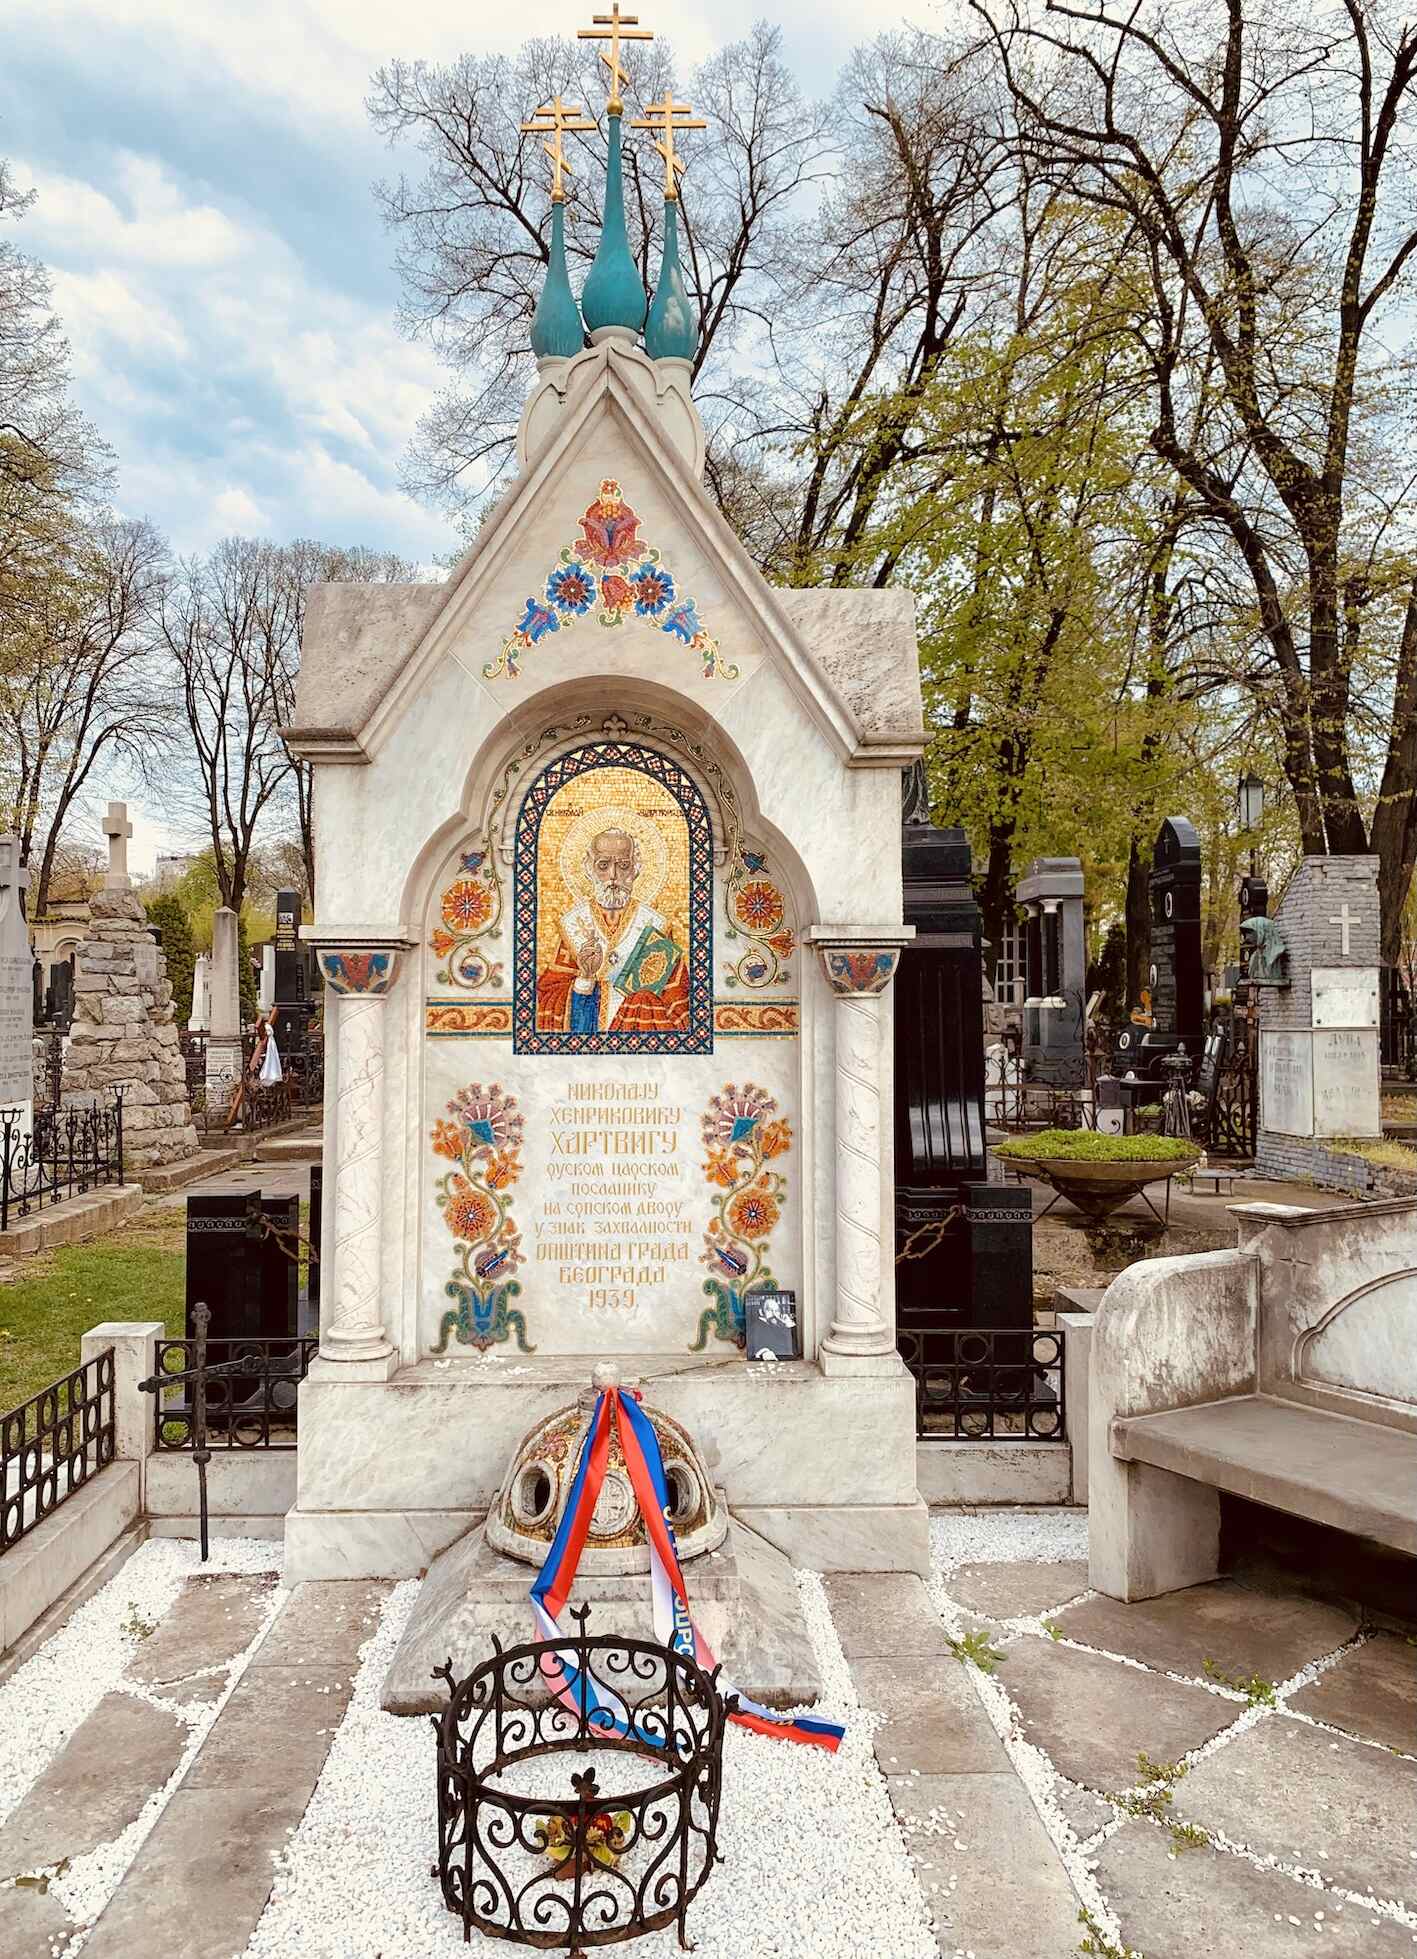 Grave of Nikolaj Henriković Hartvig